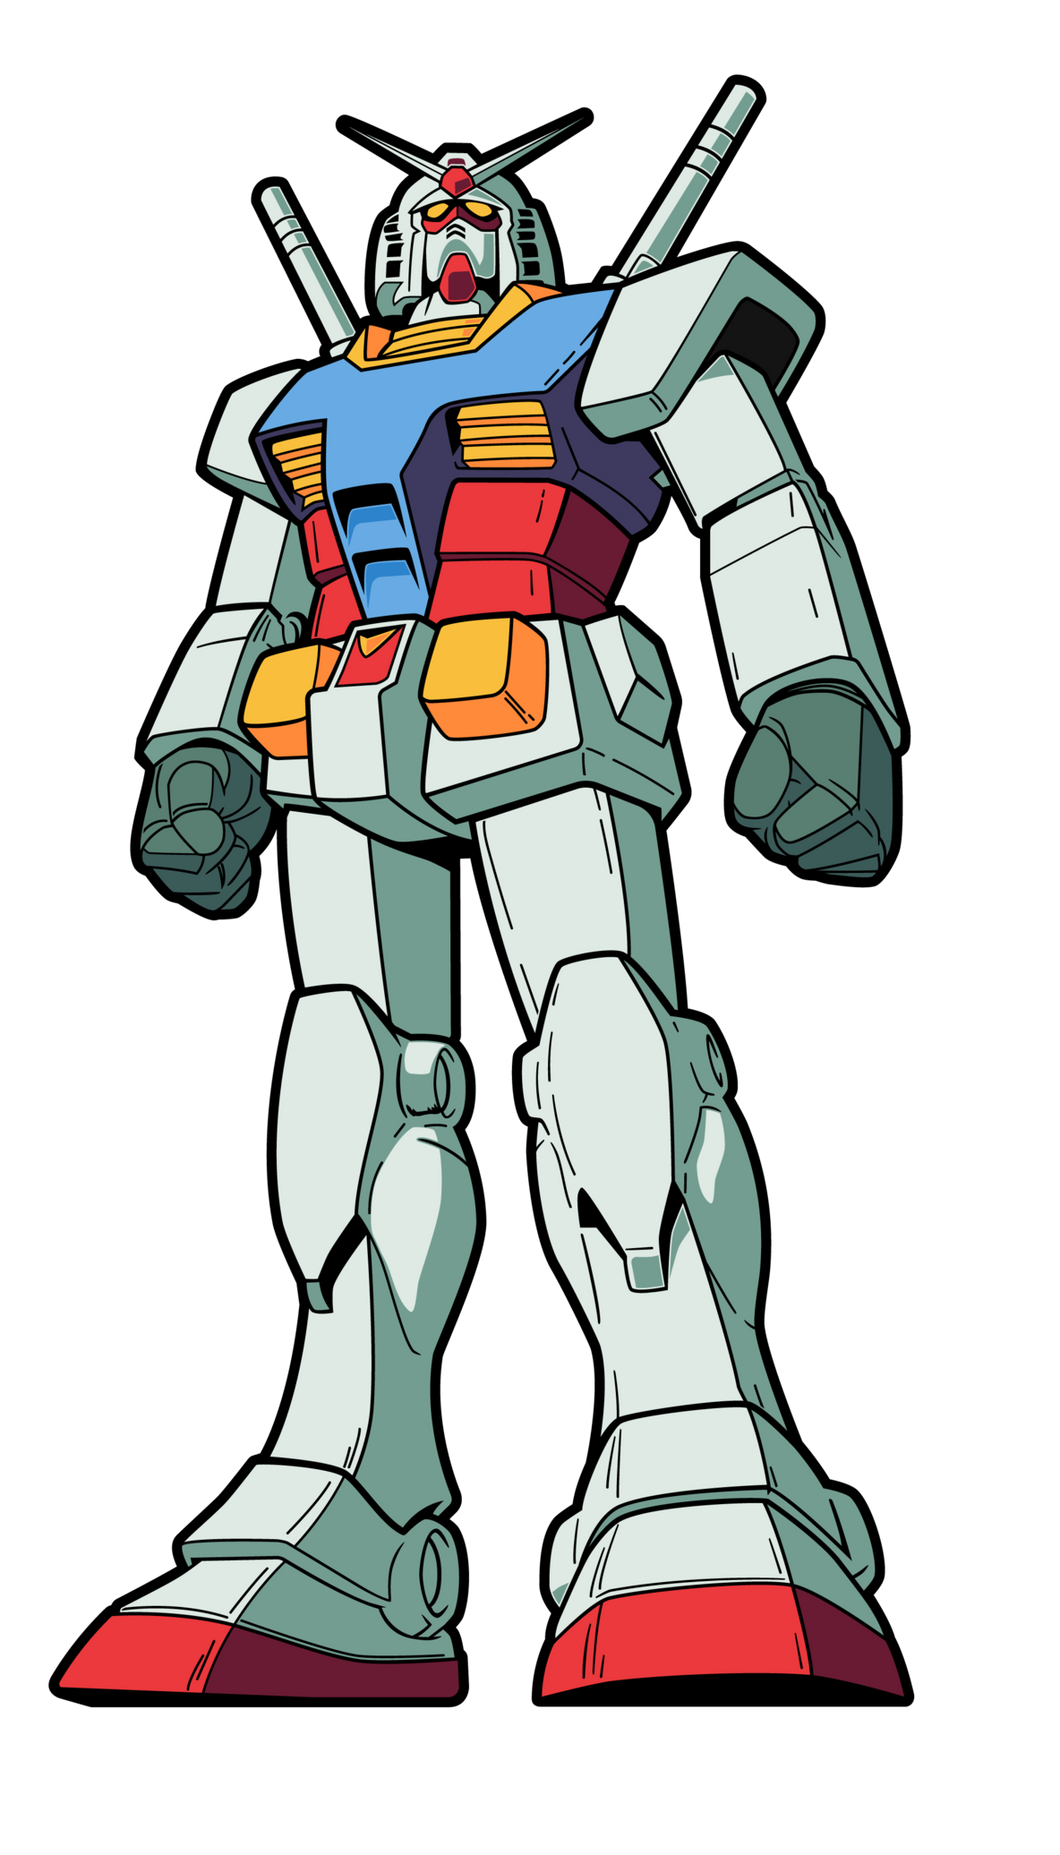 FiGPiN RX-78-2 Gundam #695